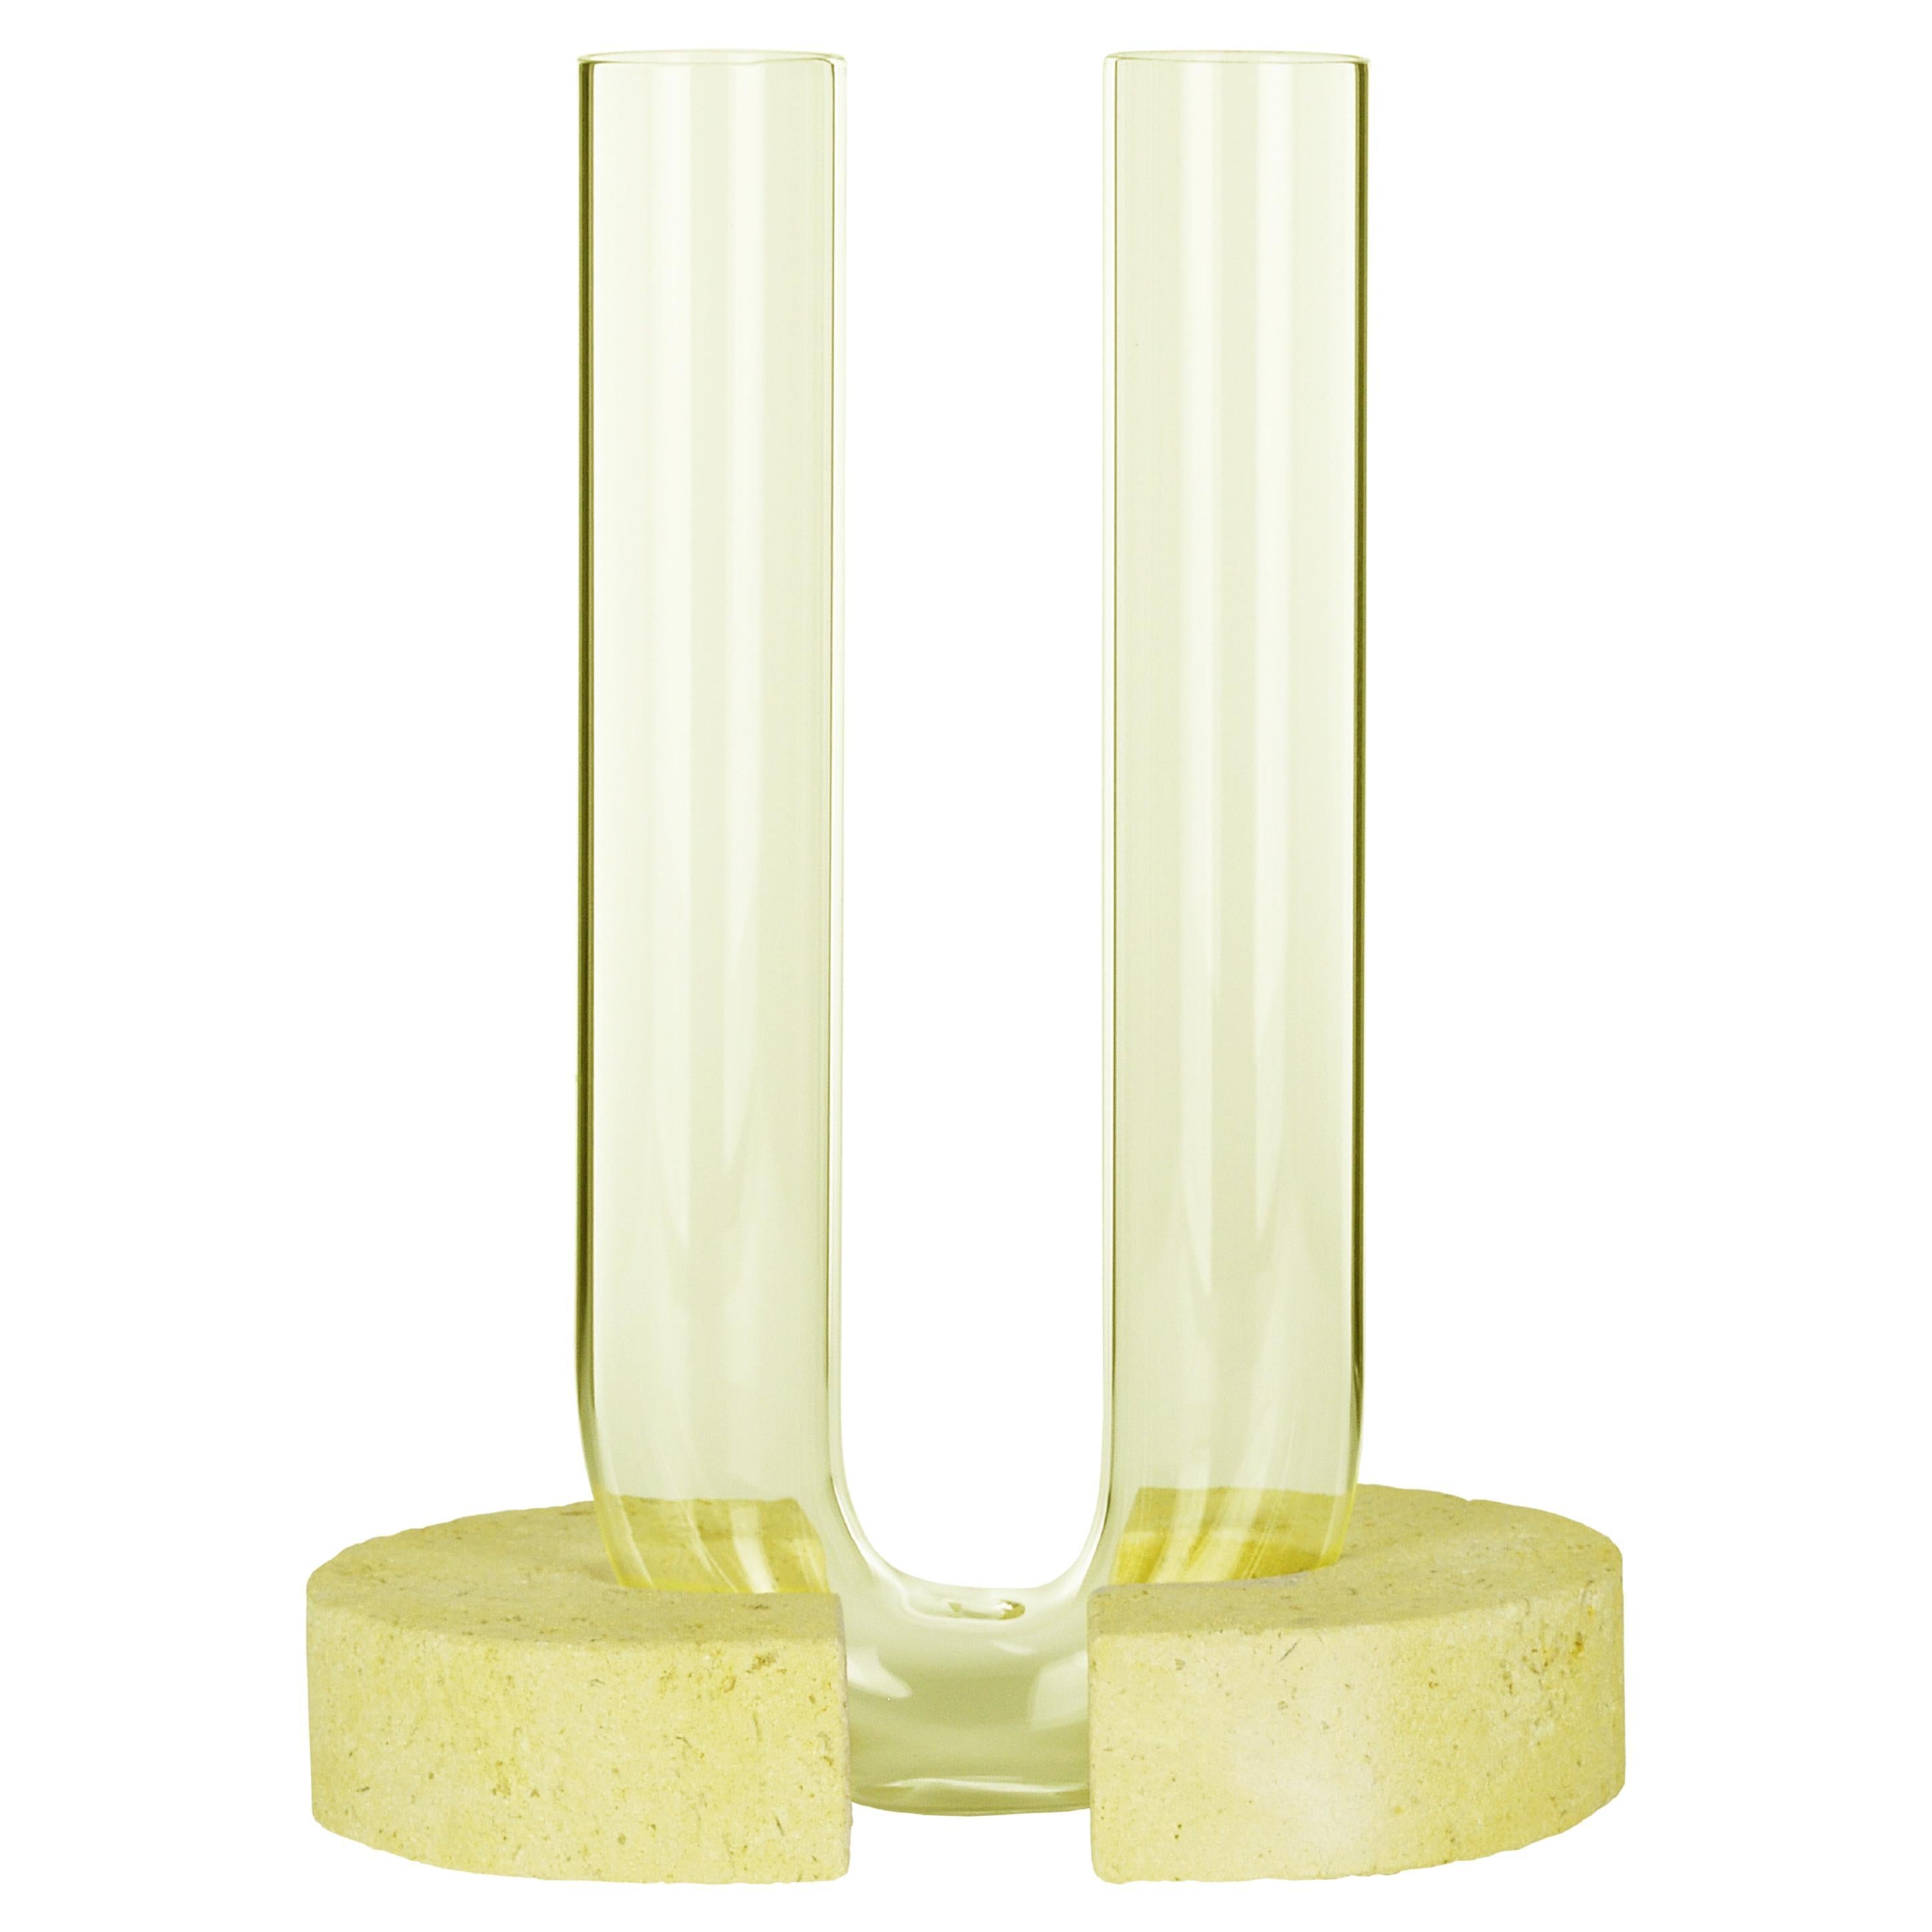 Yellow-Yellow Cochlea Del Risveglio Soils Edition Vase by Coki Barbieri For Sale